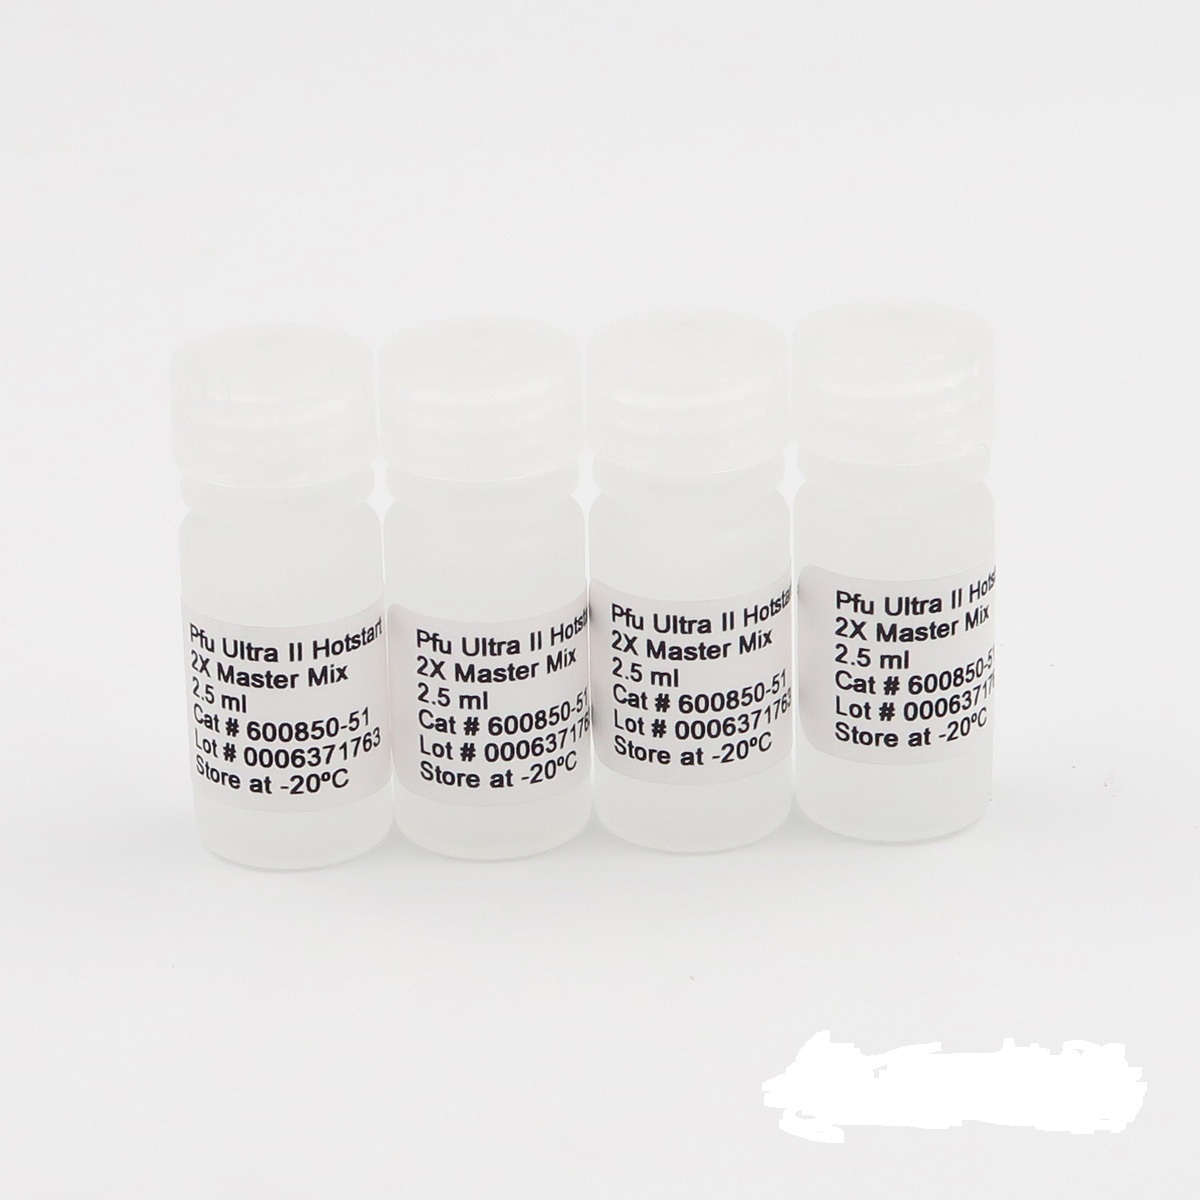 轻型链球菌染料法荧光定量PCR试剂盒